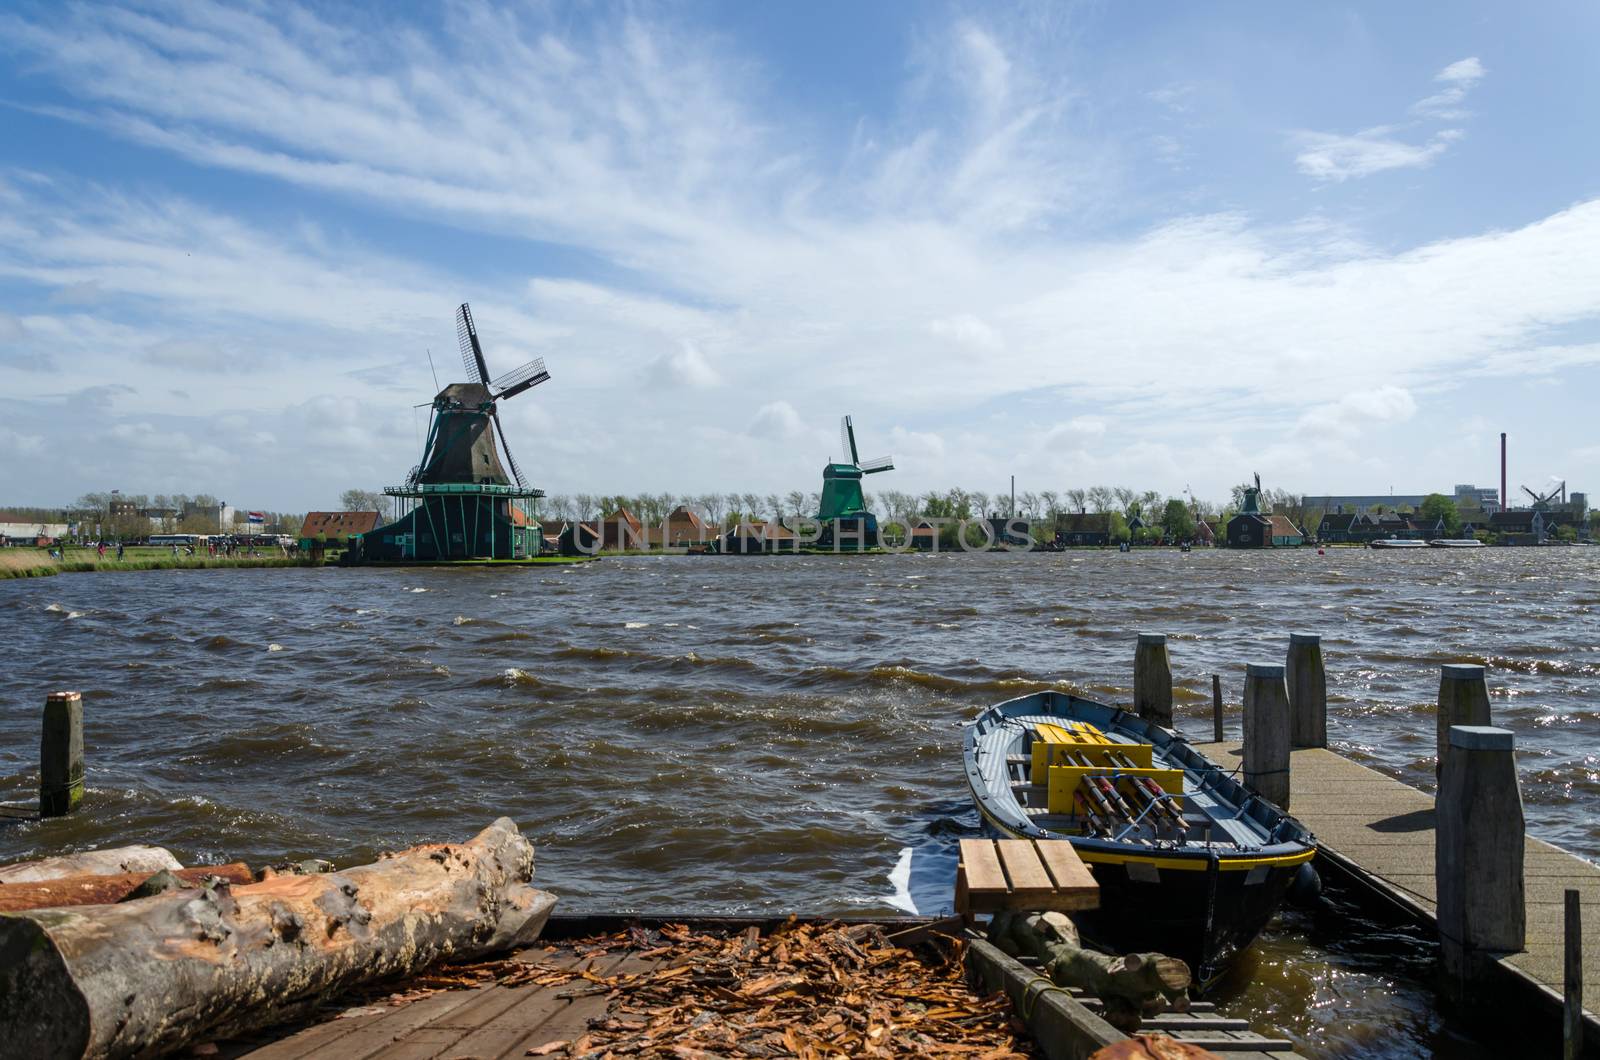 Wind mills in Zaanse Schans, The Netherlands.